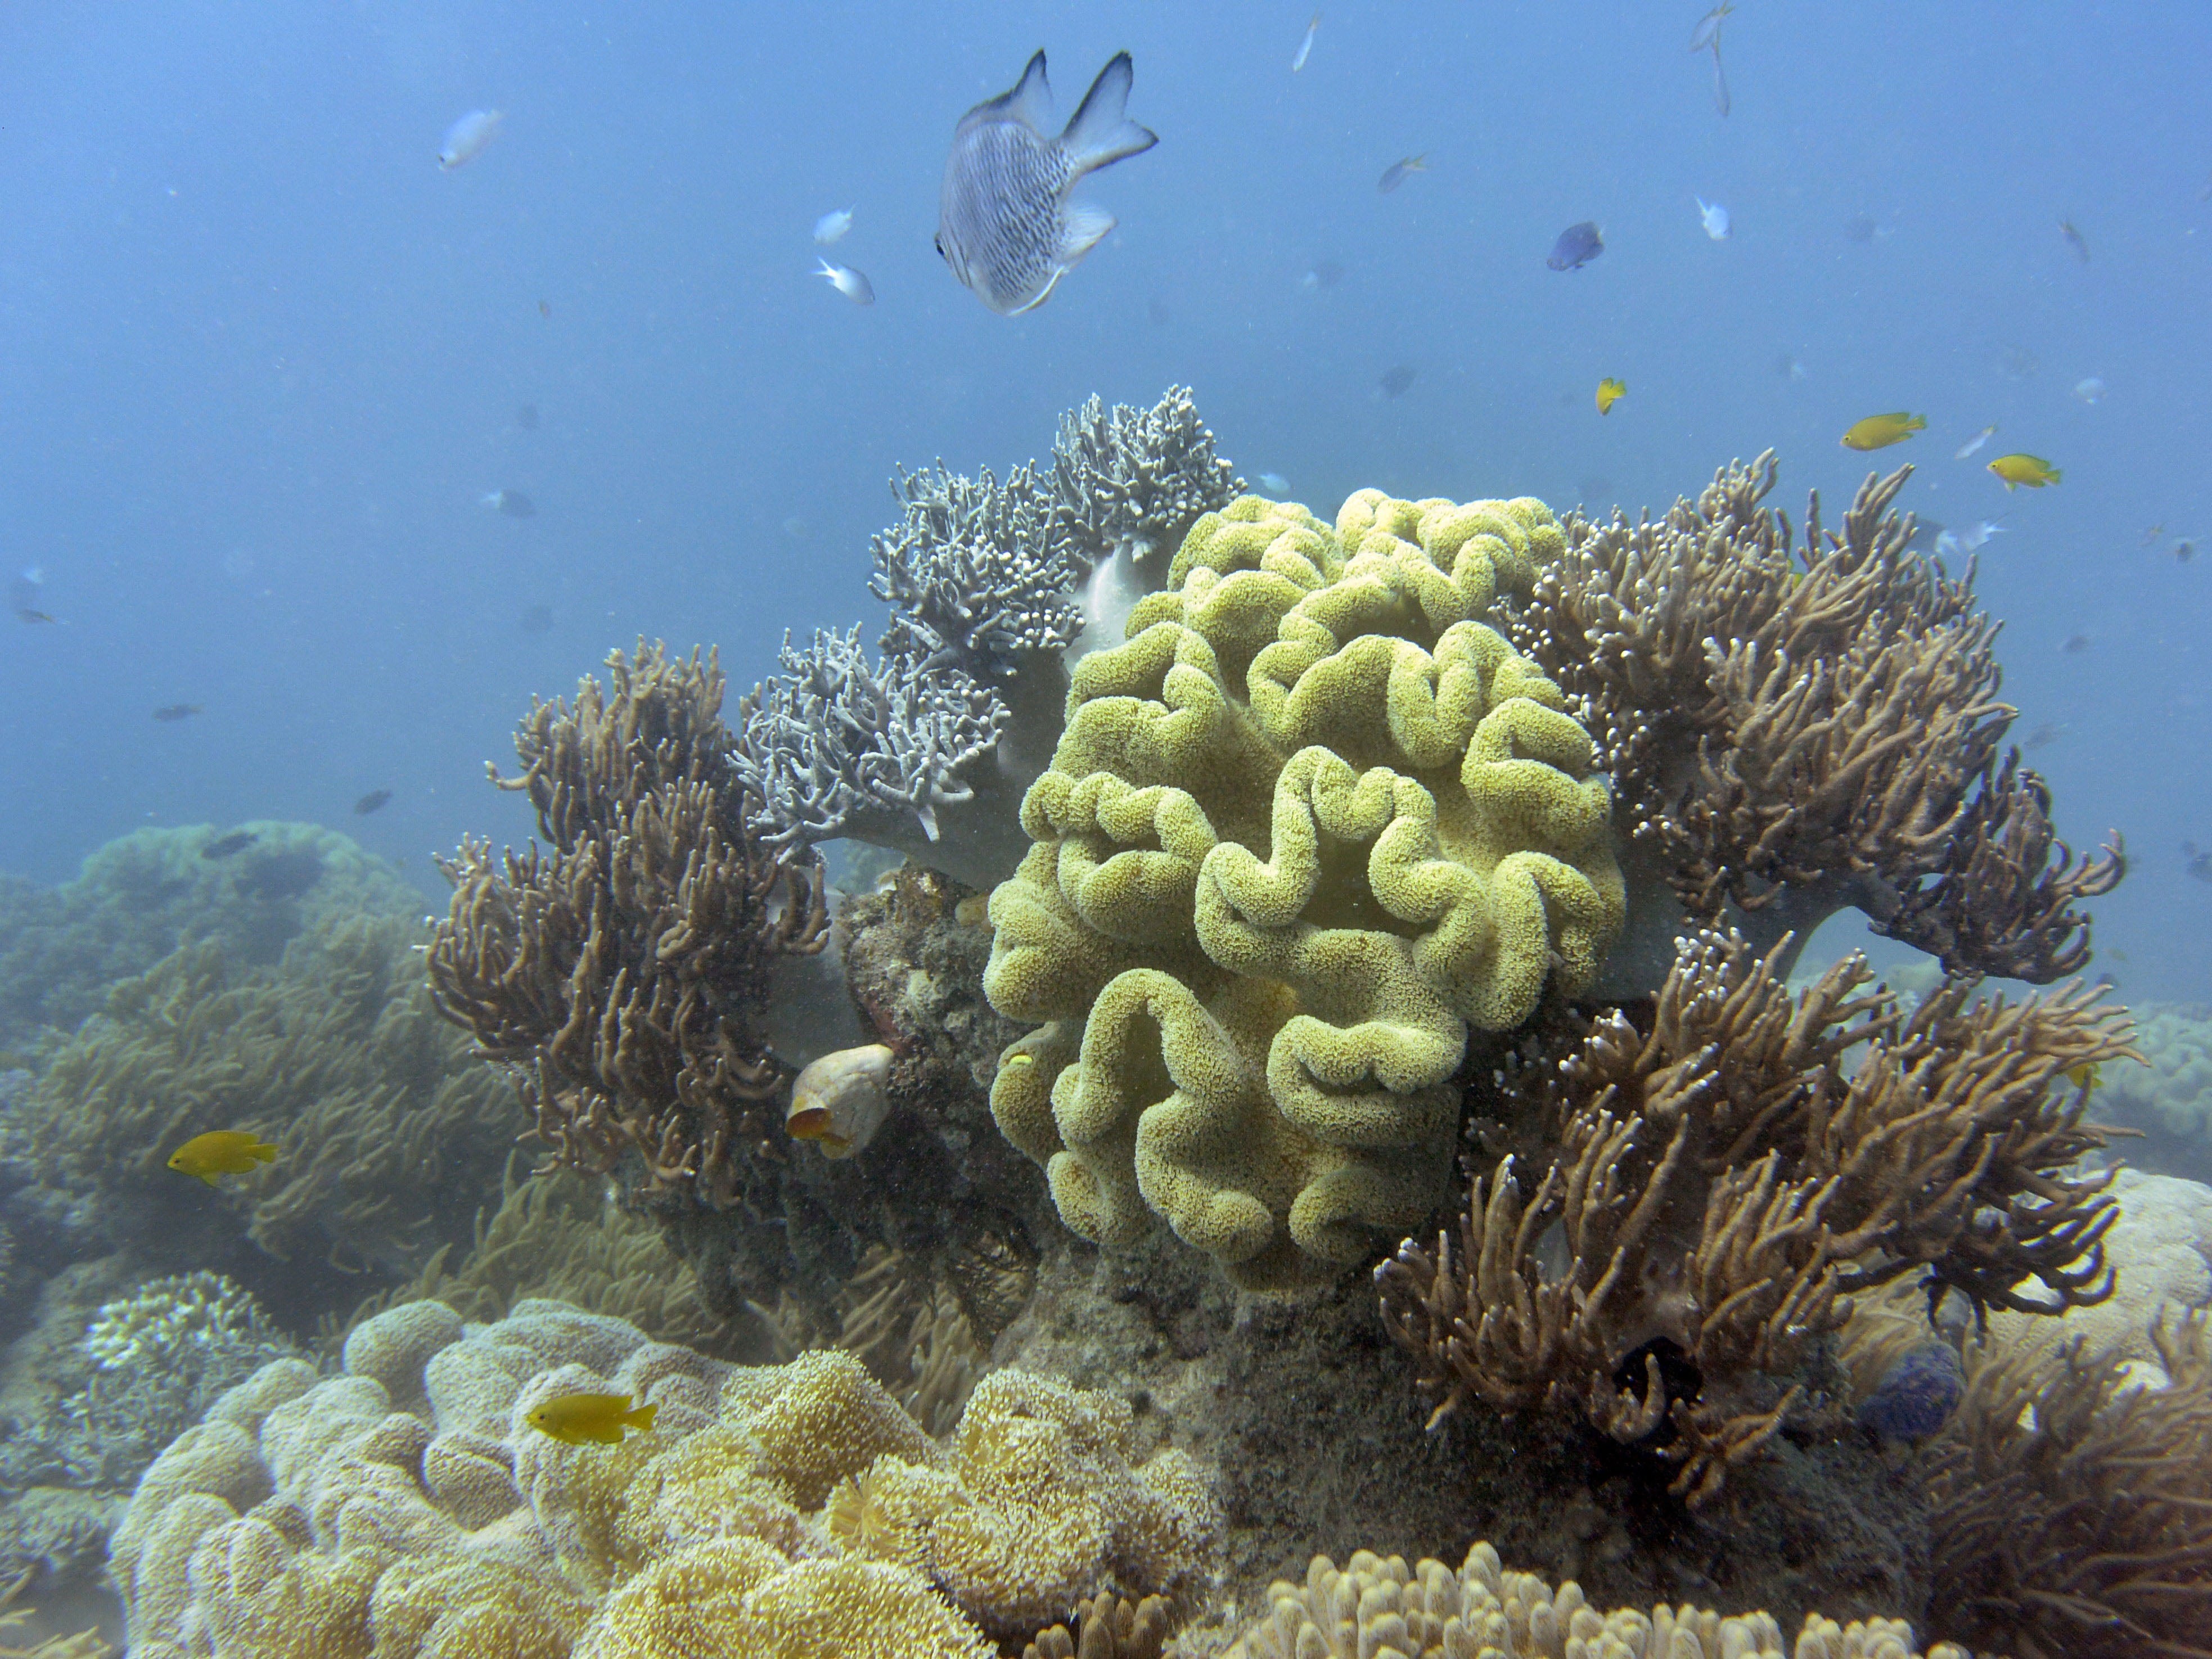 Australia’s Great Barrier Reef is facing increasing bleaching